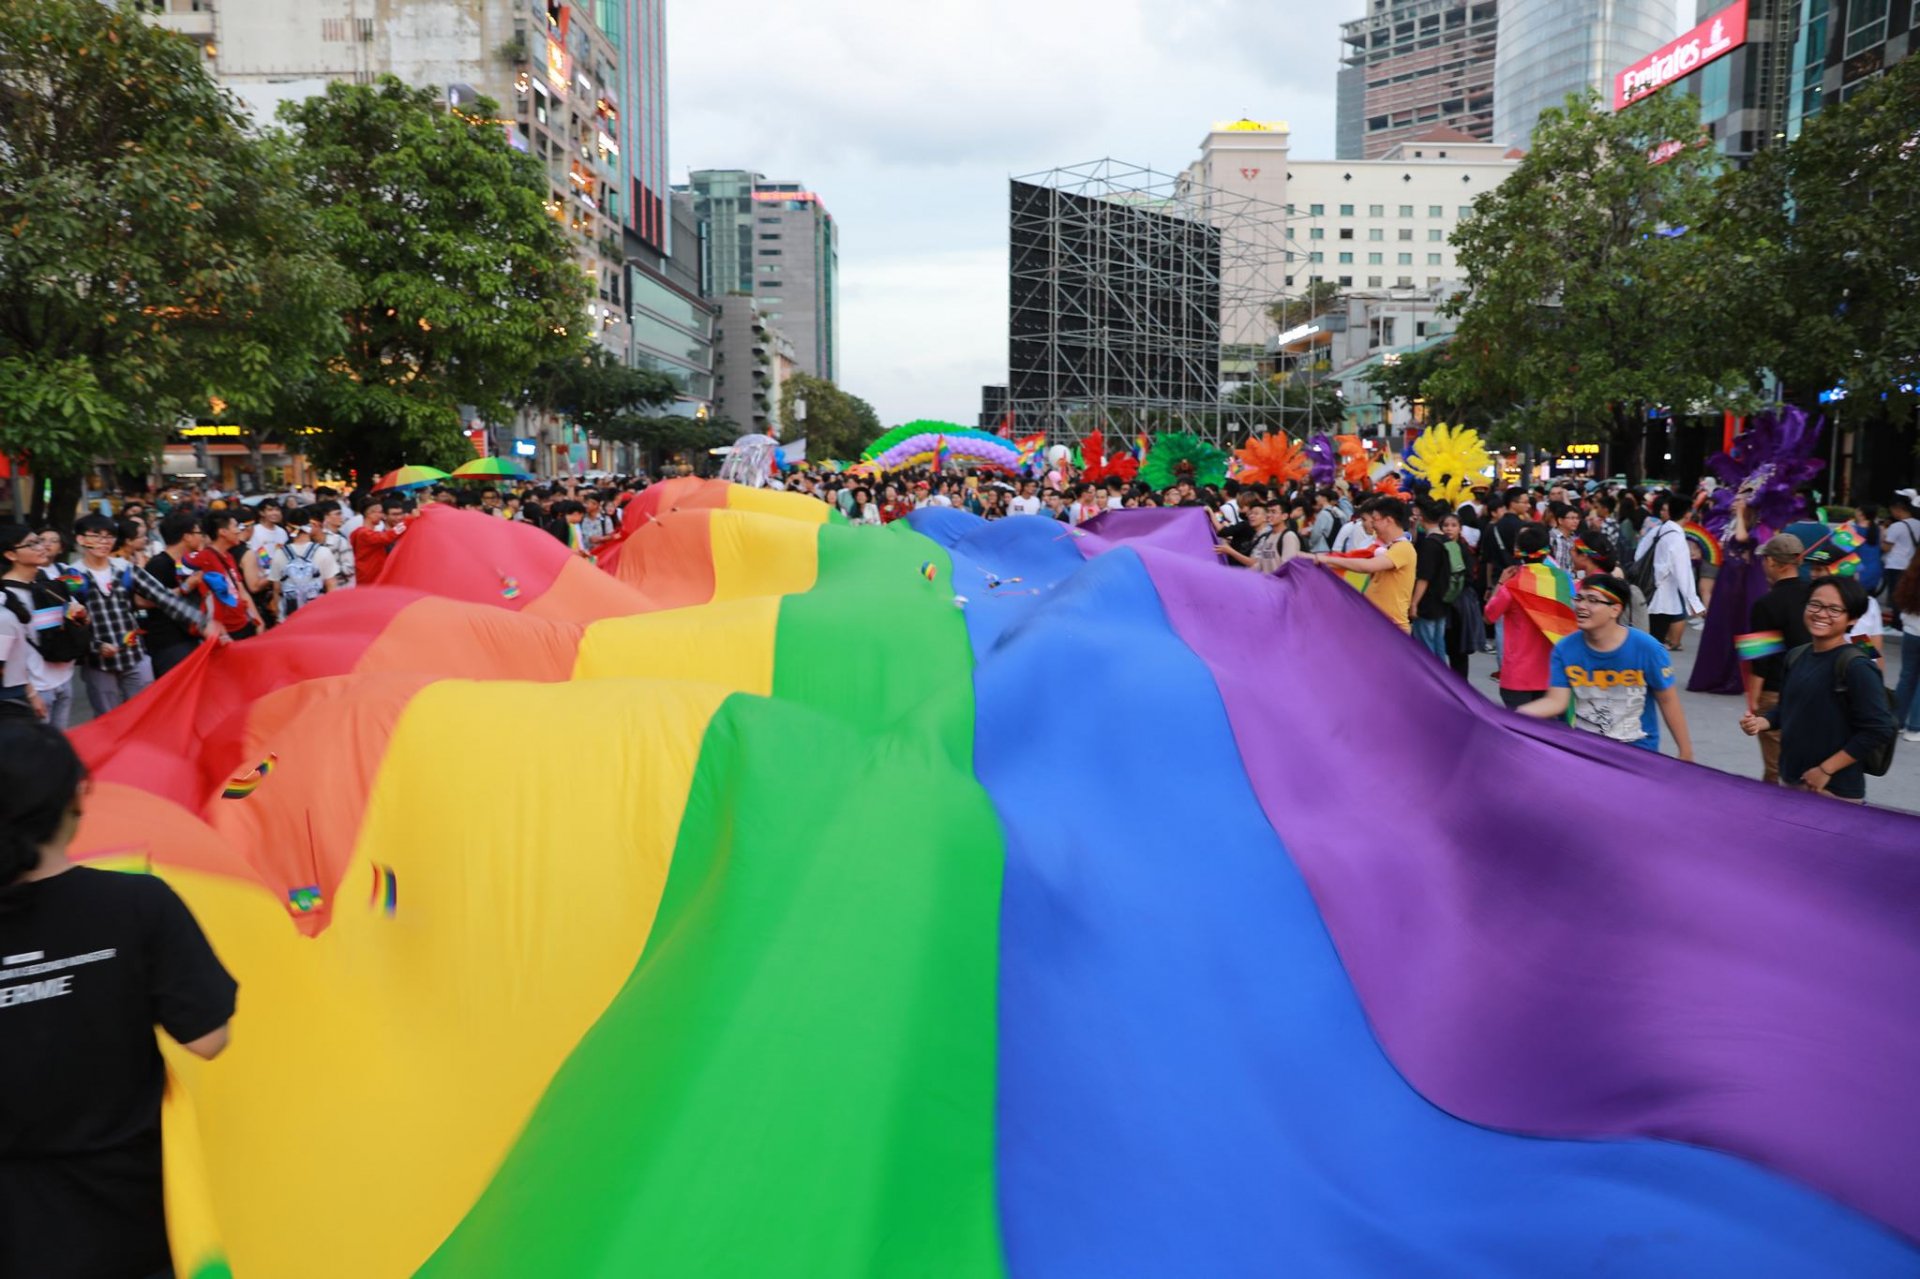 Sự kiện Viet Pride diễn ra với thông điệp nhằm thay đổi nhận thức của xã hội, bảo vệ quyền cho nhóm thiểu số và tạo ra những đối thoại về cộng đồng LGBT tại Việt Nam.